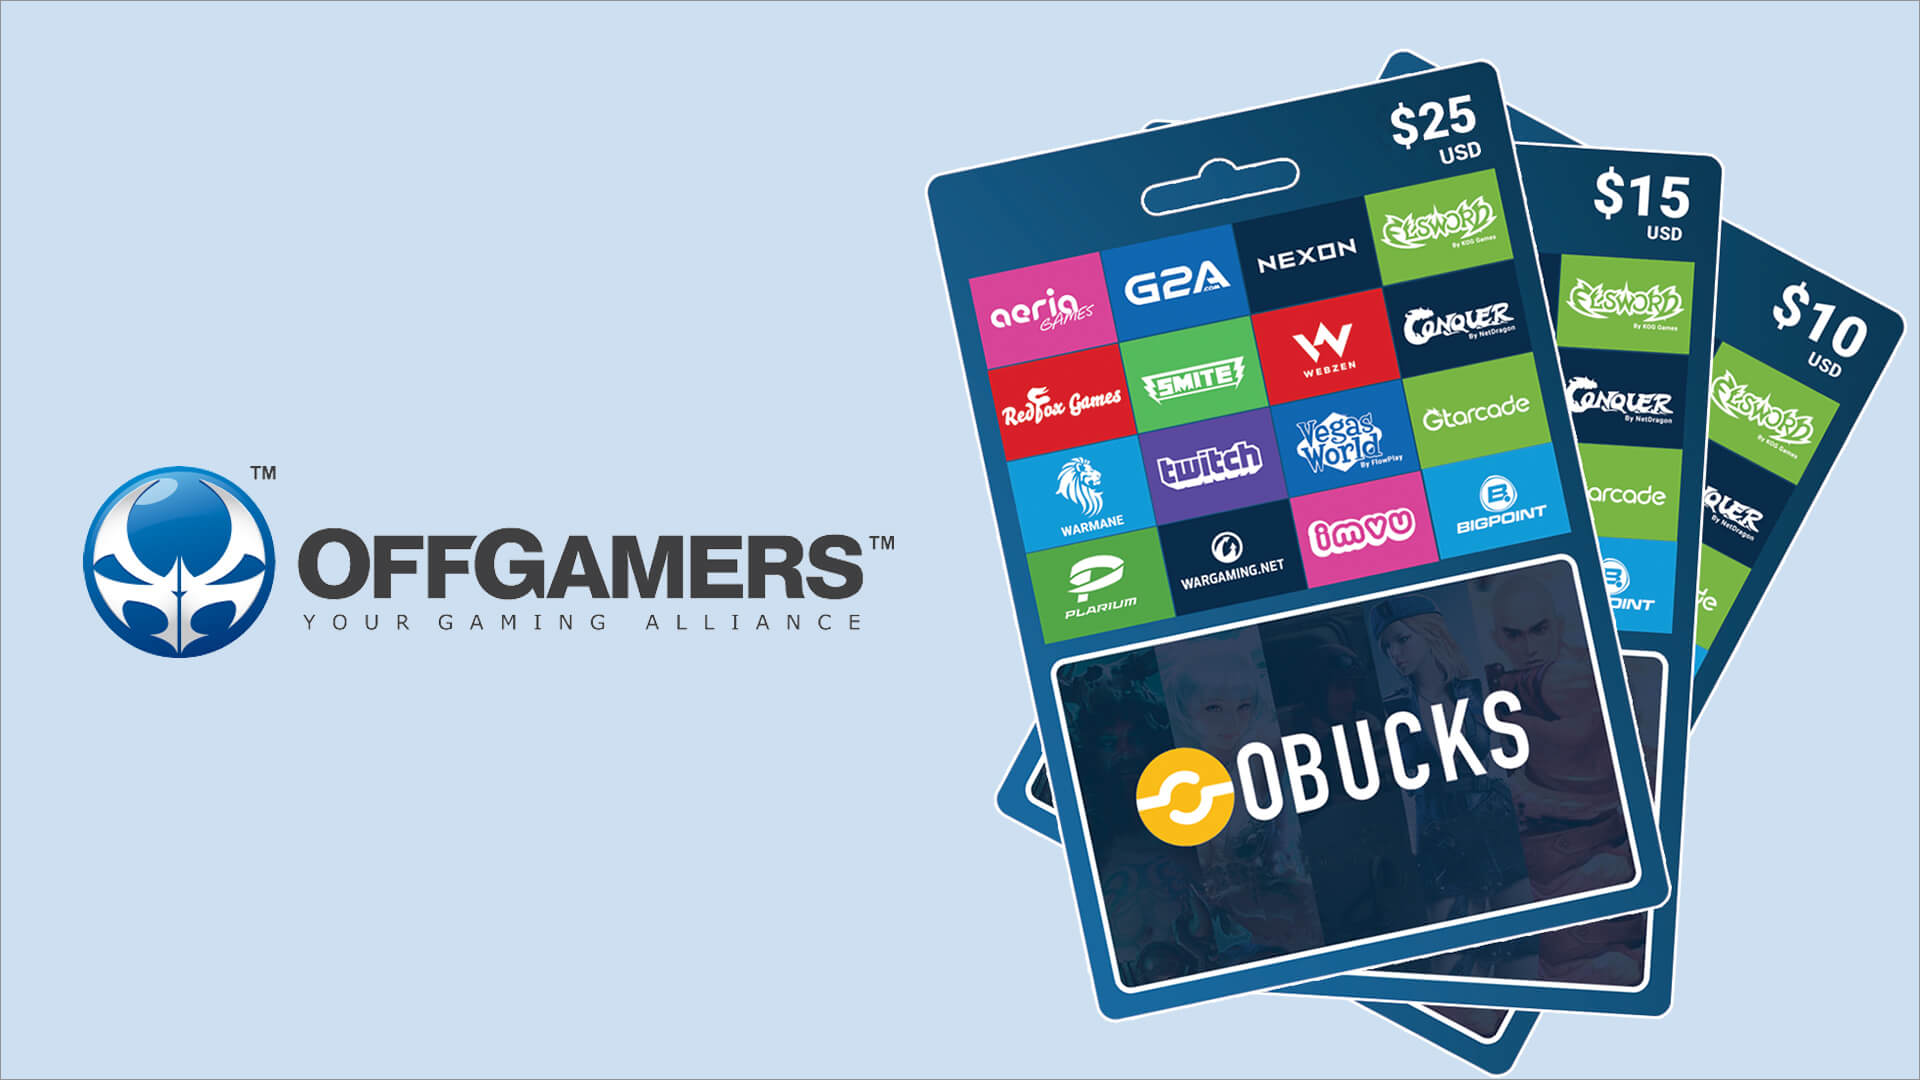 Buy an Obucks card on OffGamers offgamers2.jpg